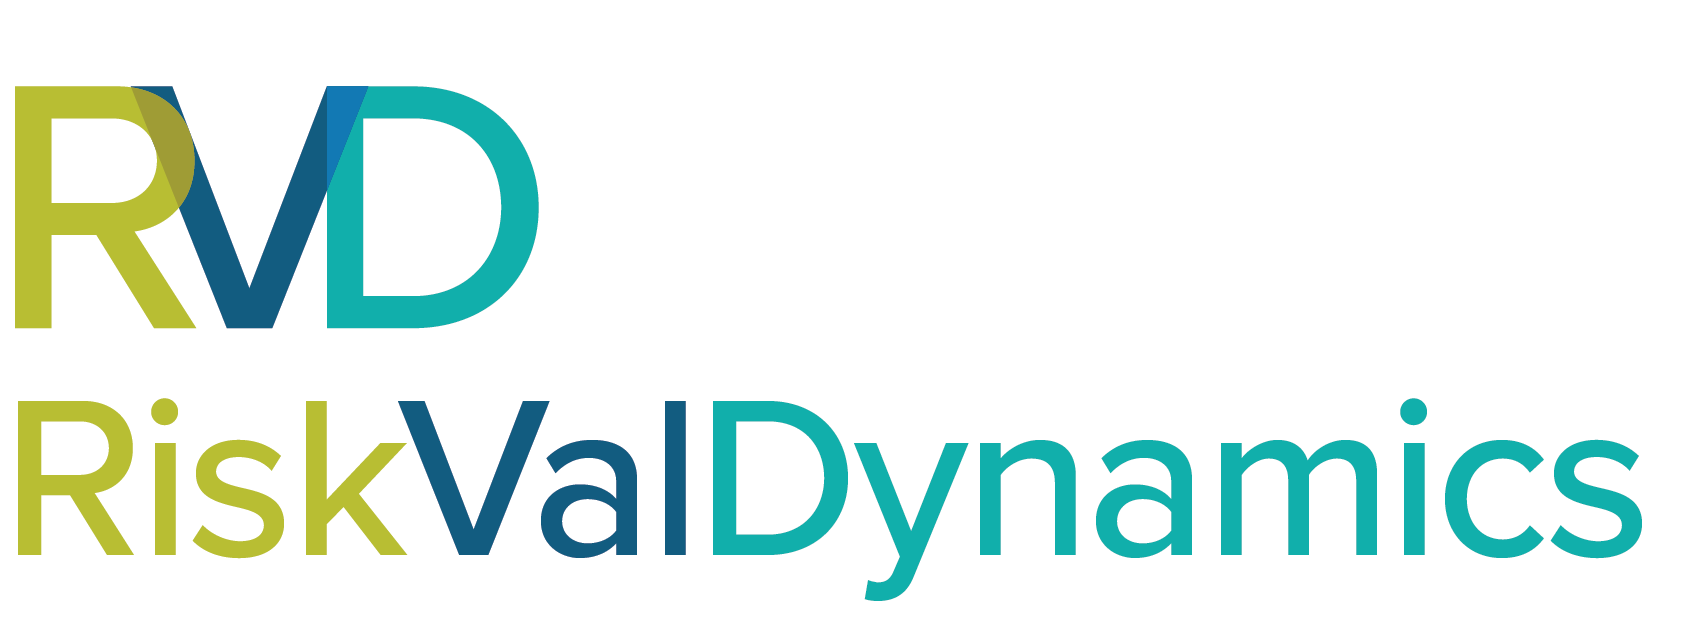 RiskValDynamics logo